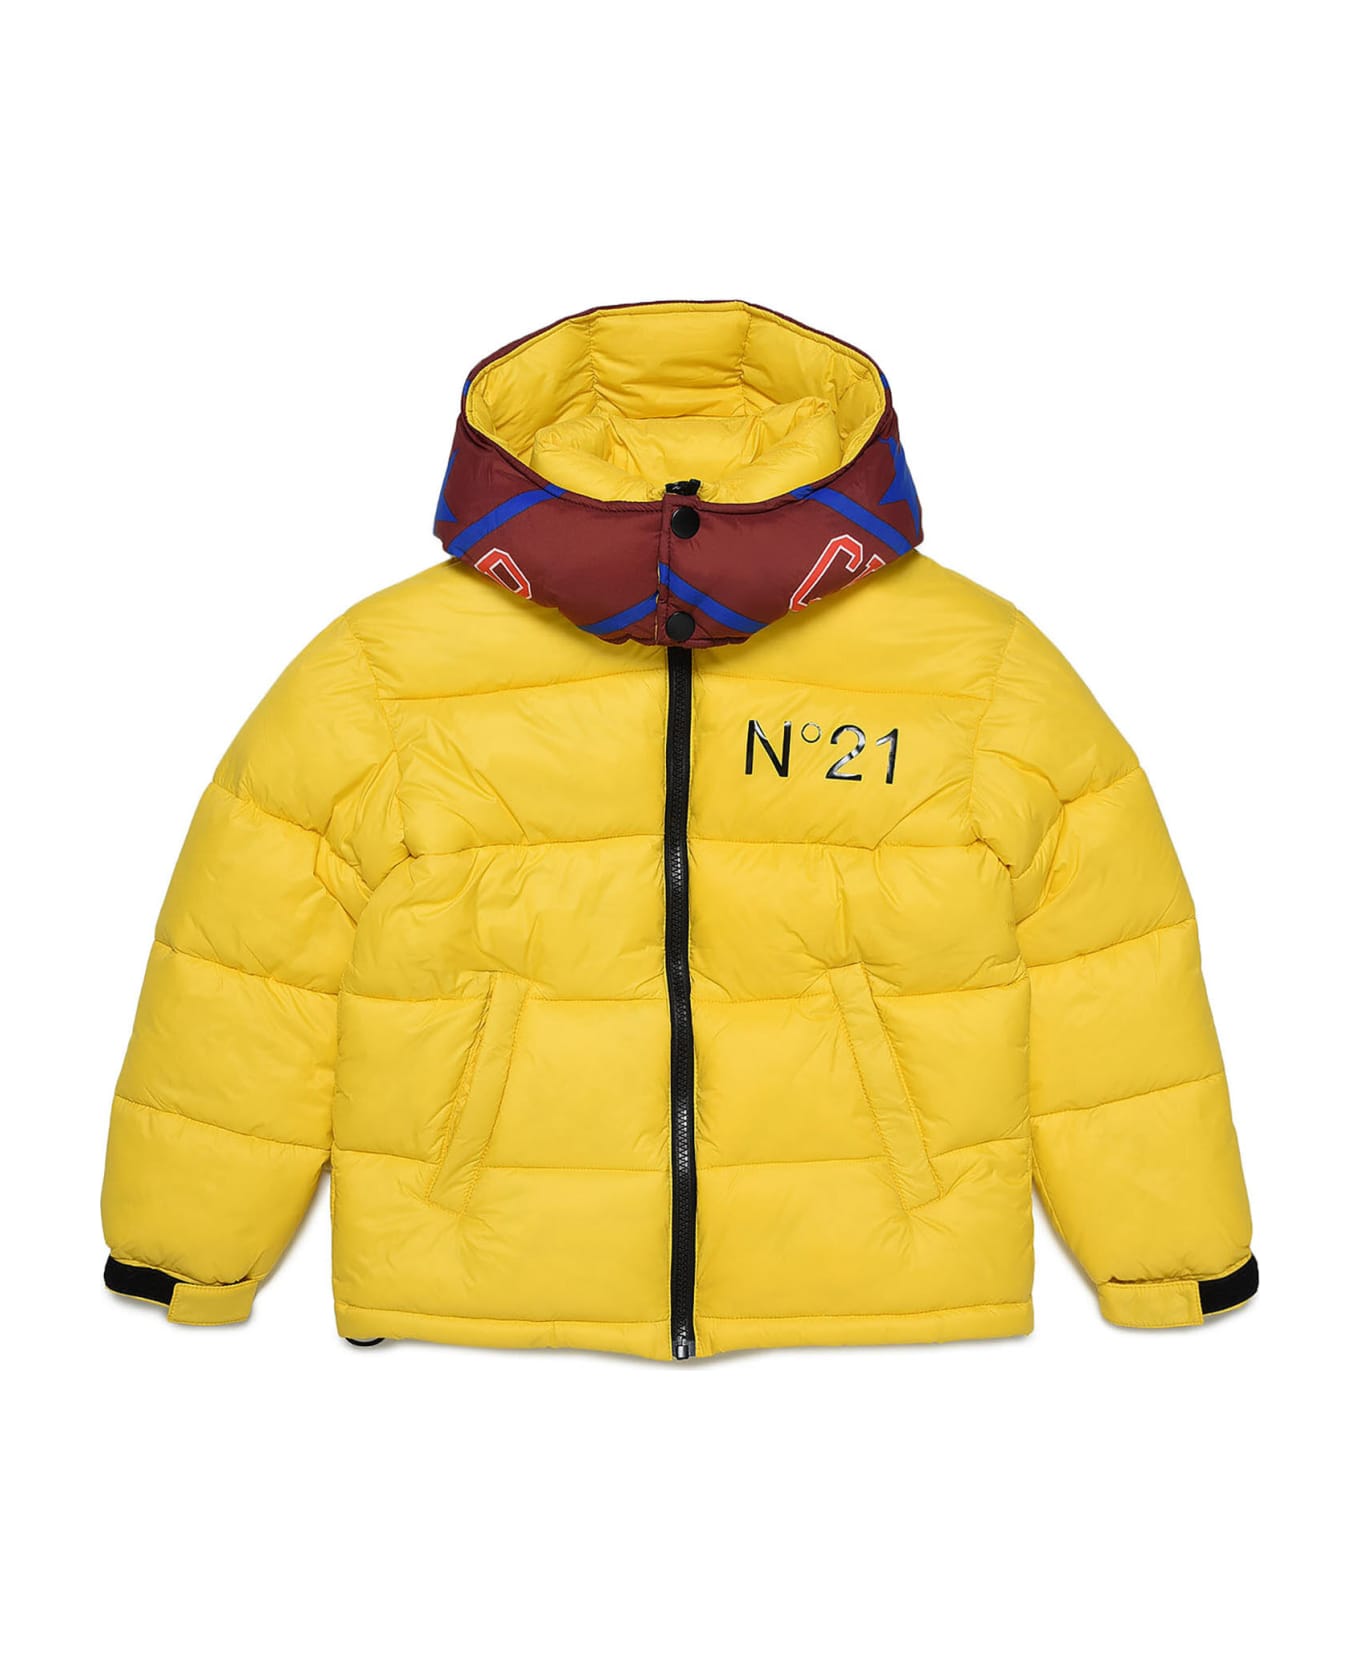 N.21 N21j68m Jacket N°21 - Sun yellow